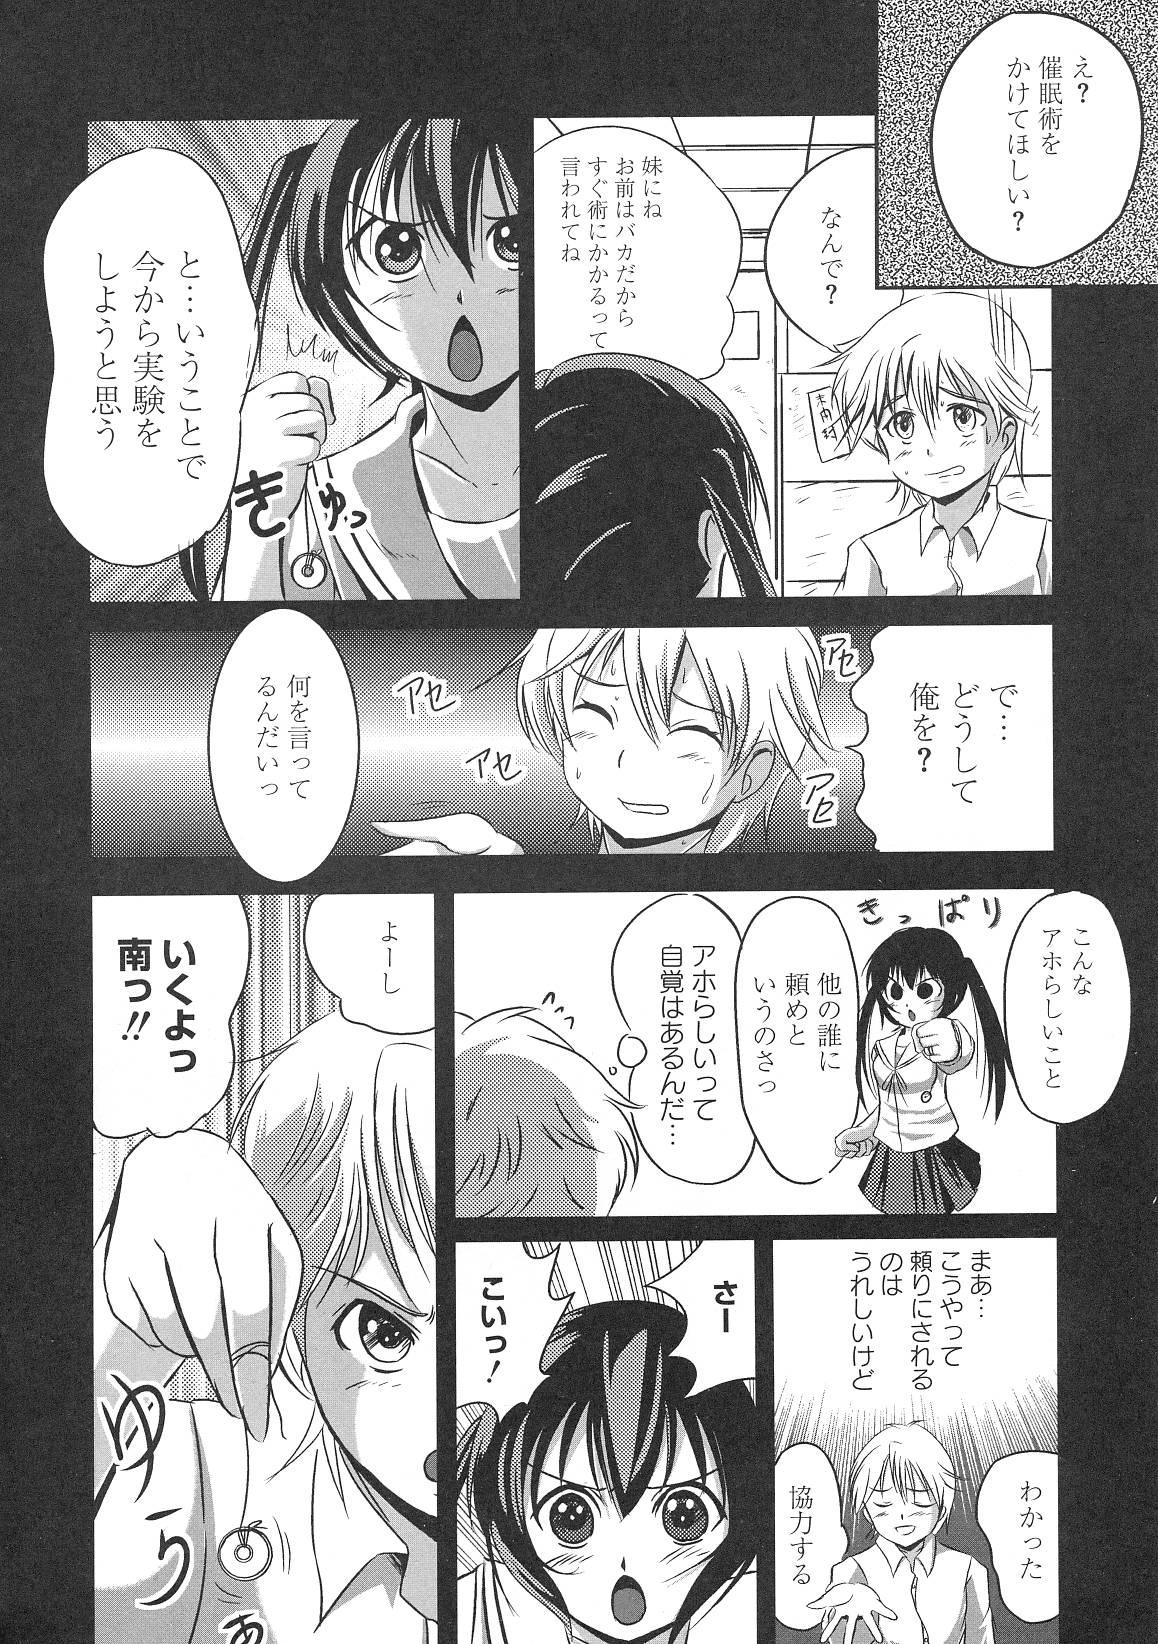 Uncensored Minami no Shikijou 3 Shimai - Minami-ke Asian - Page 5